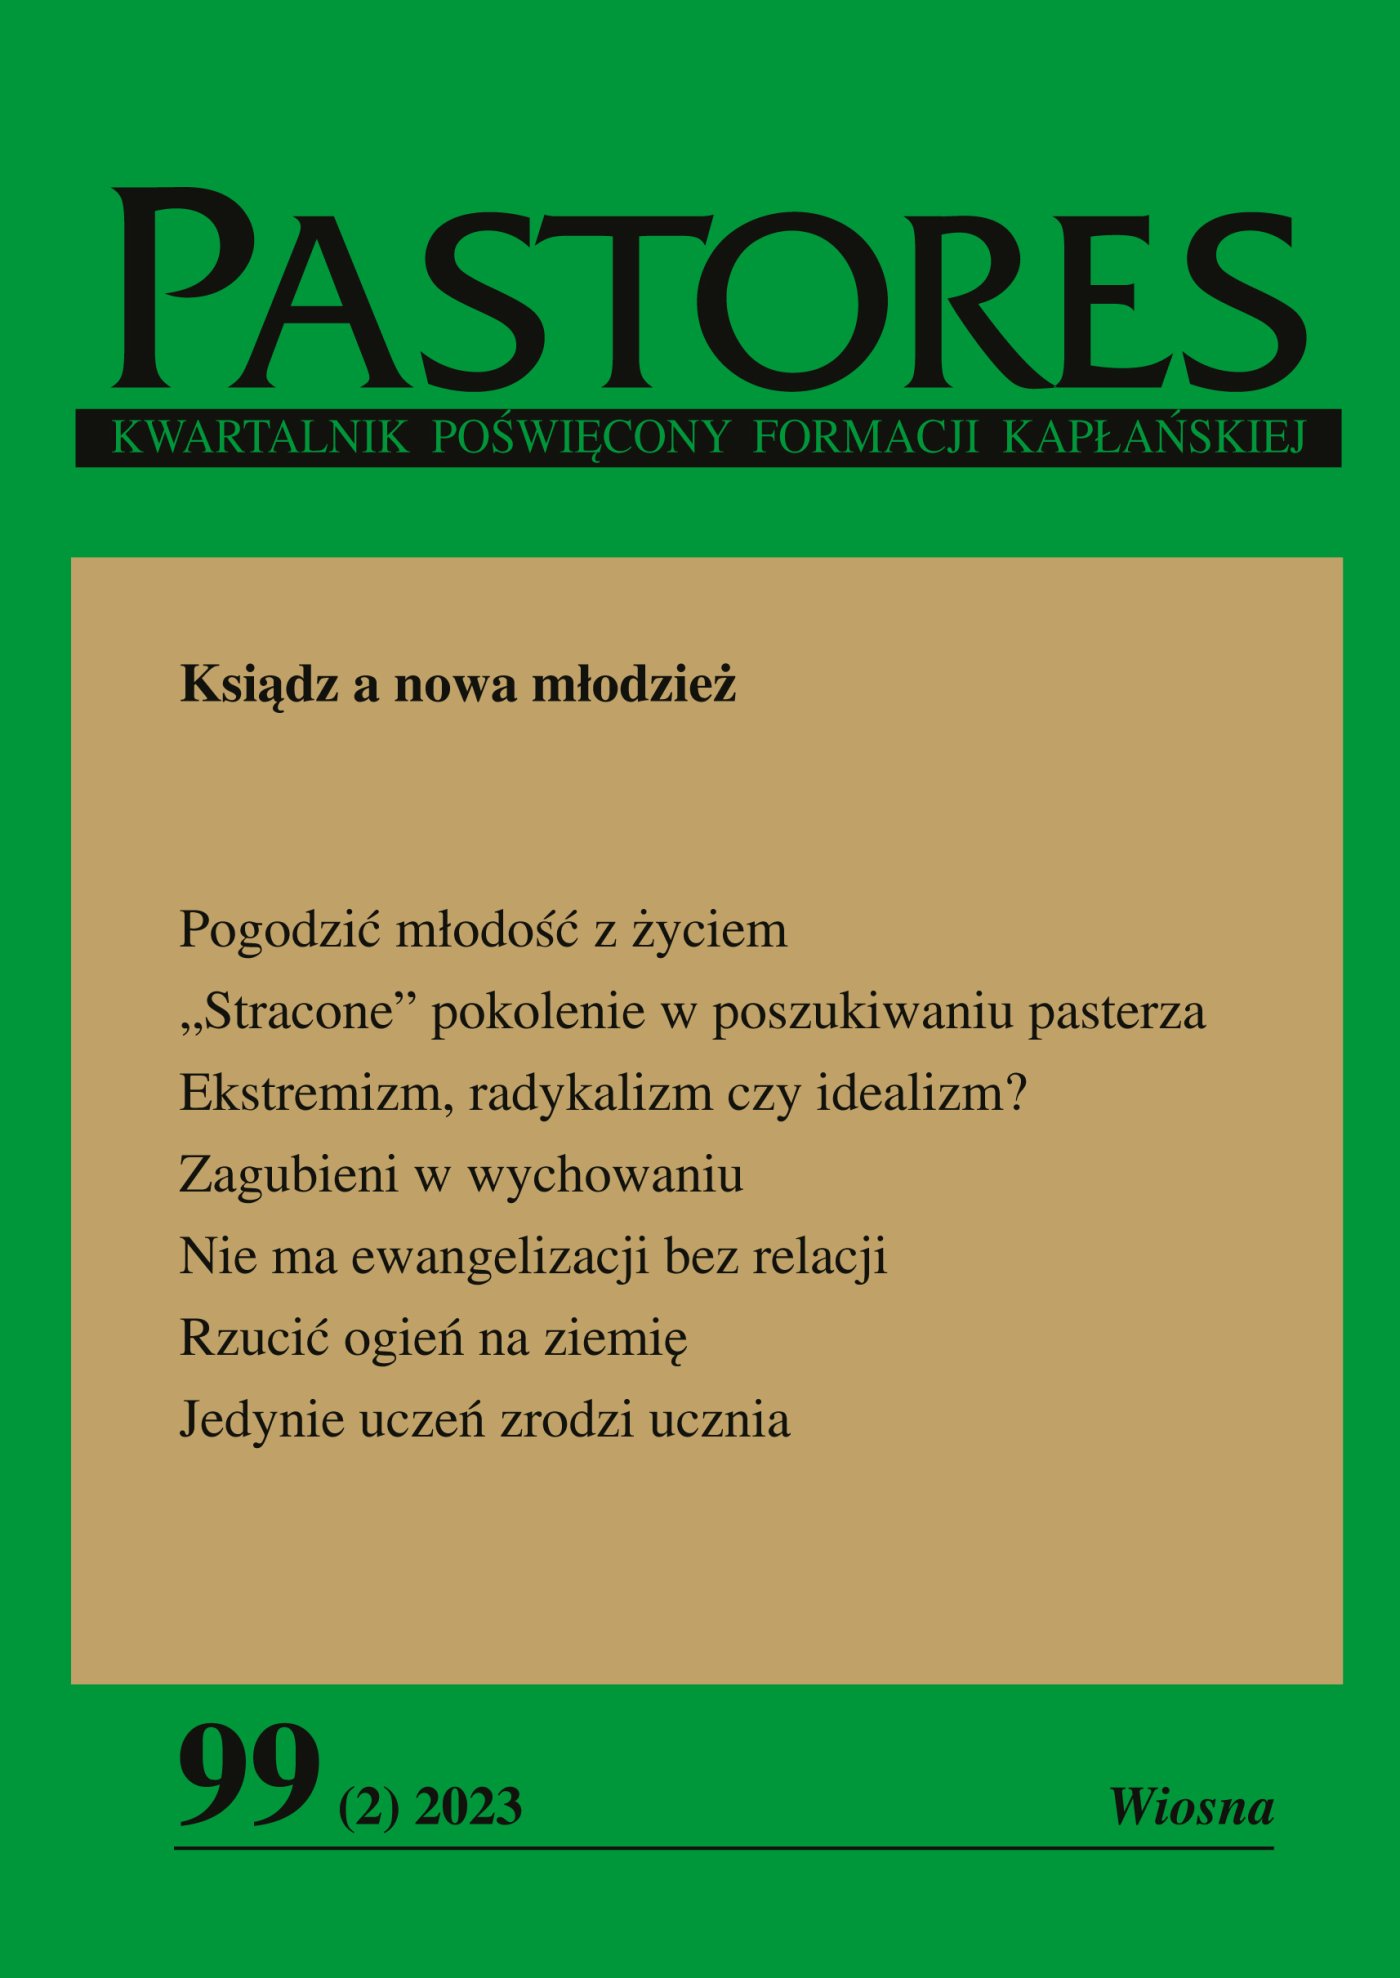 Pastores 99 (2) 2023 Wiosna - Ebook (Książka EPUB) do pobrania w formacie EPUB